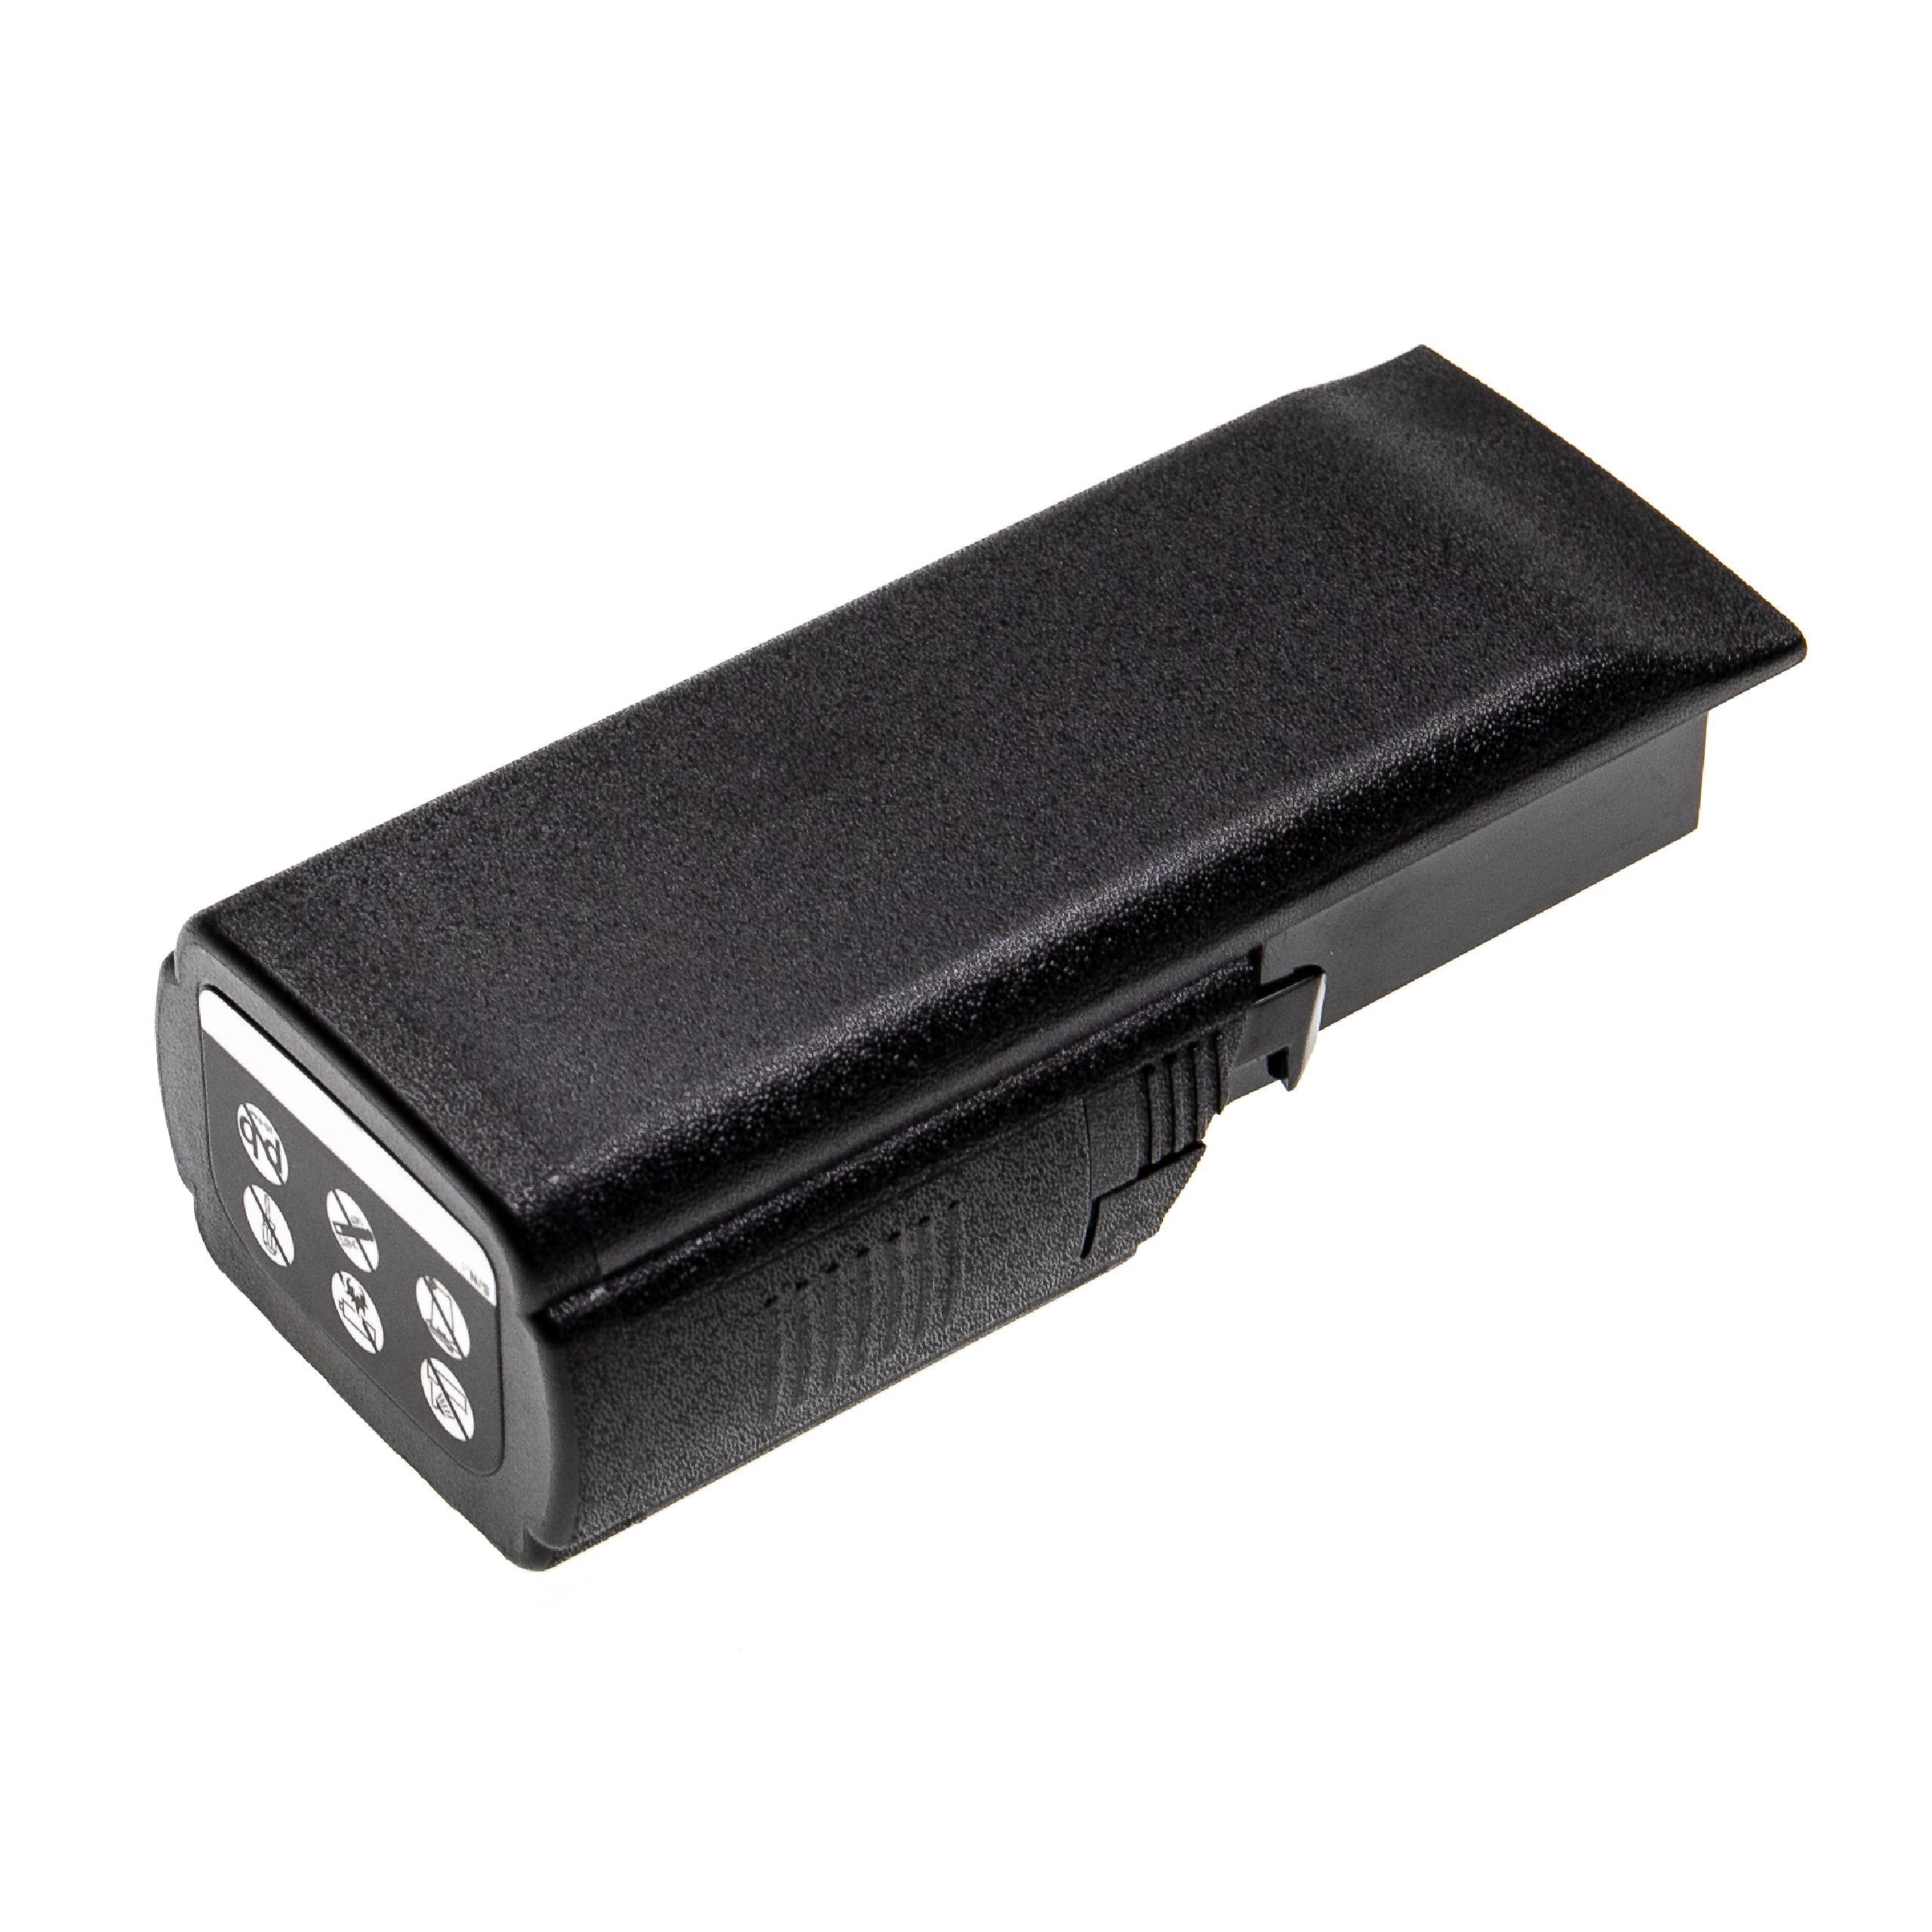 Batterie remplace Motorola NNTN7034A, NNTN7034B, NNTN7035 pour radio talkie-walkie - 4600mAh 7,4V Li-ion